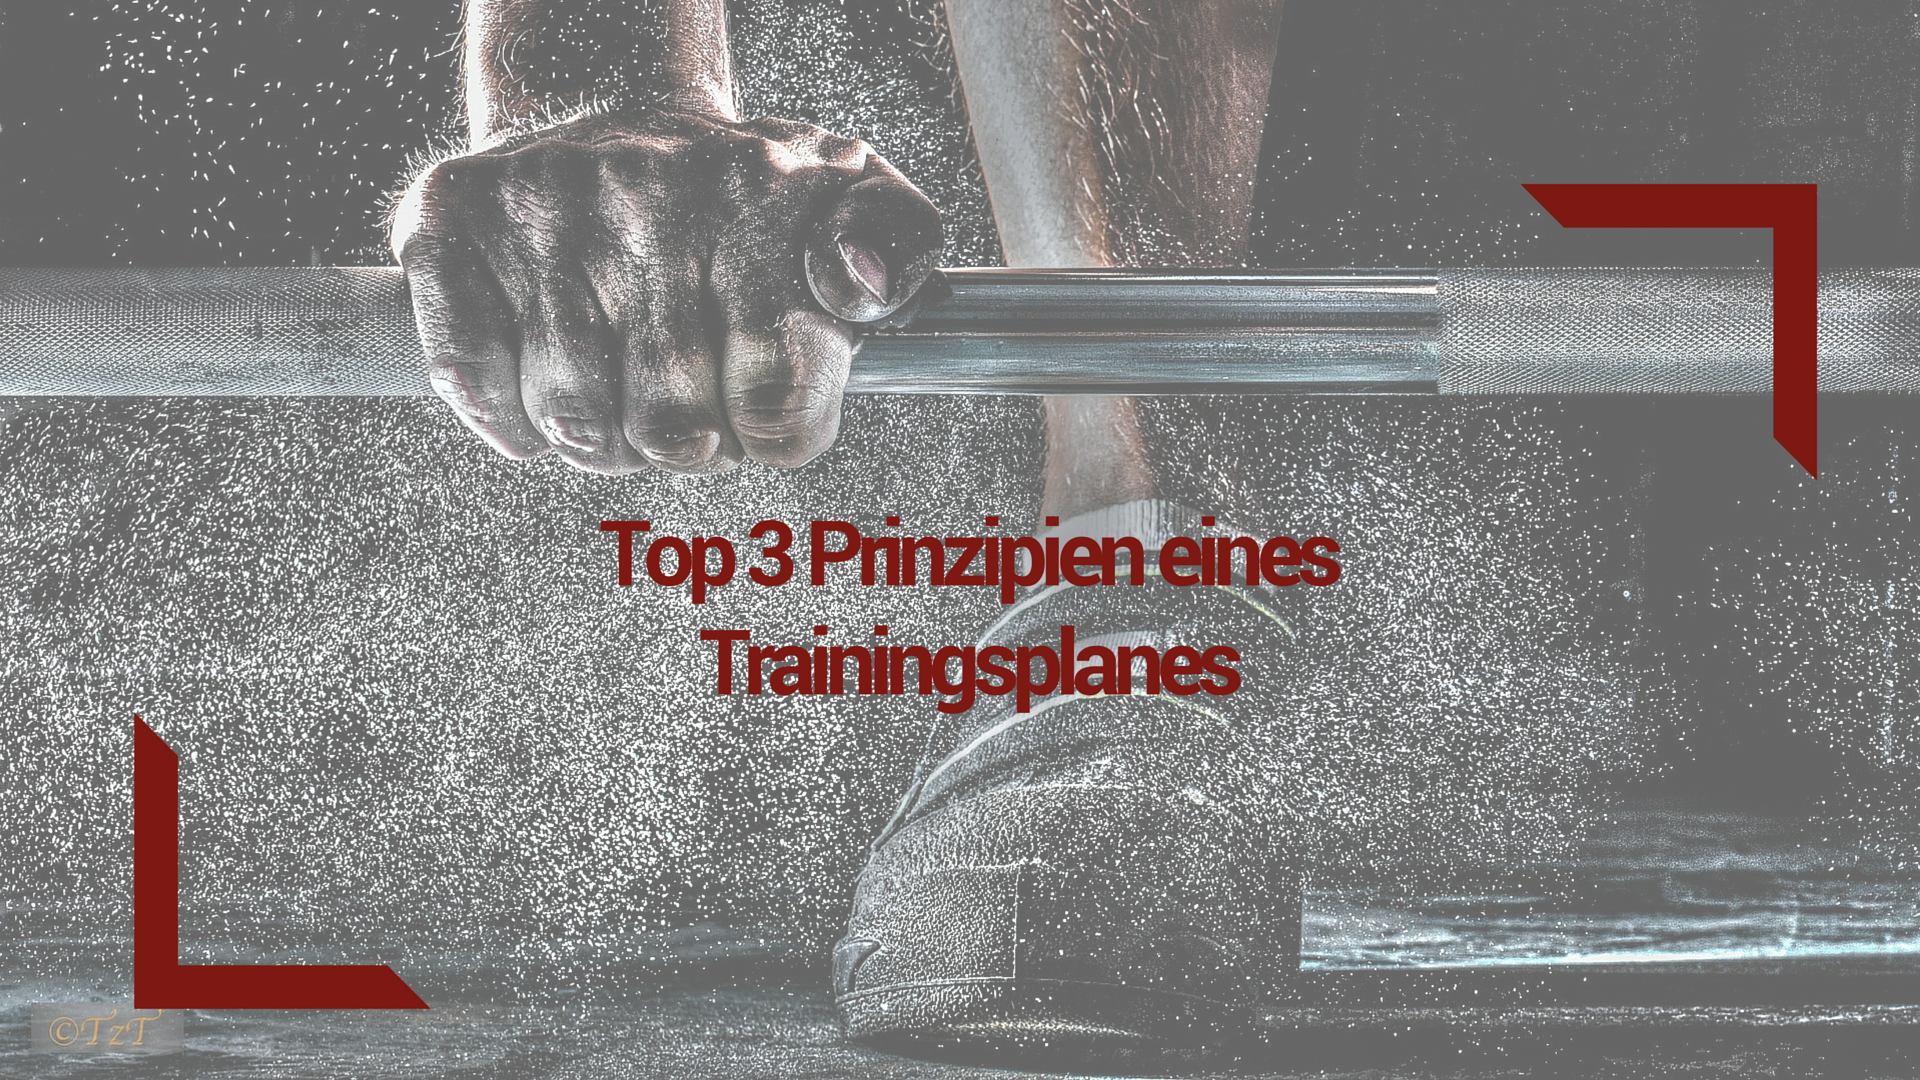 Top 3 Prinzipien eines Trainingsplanes